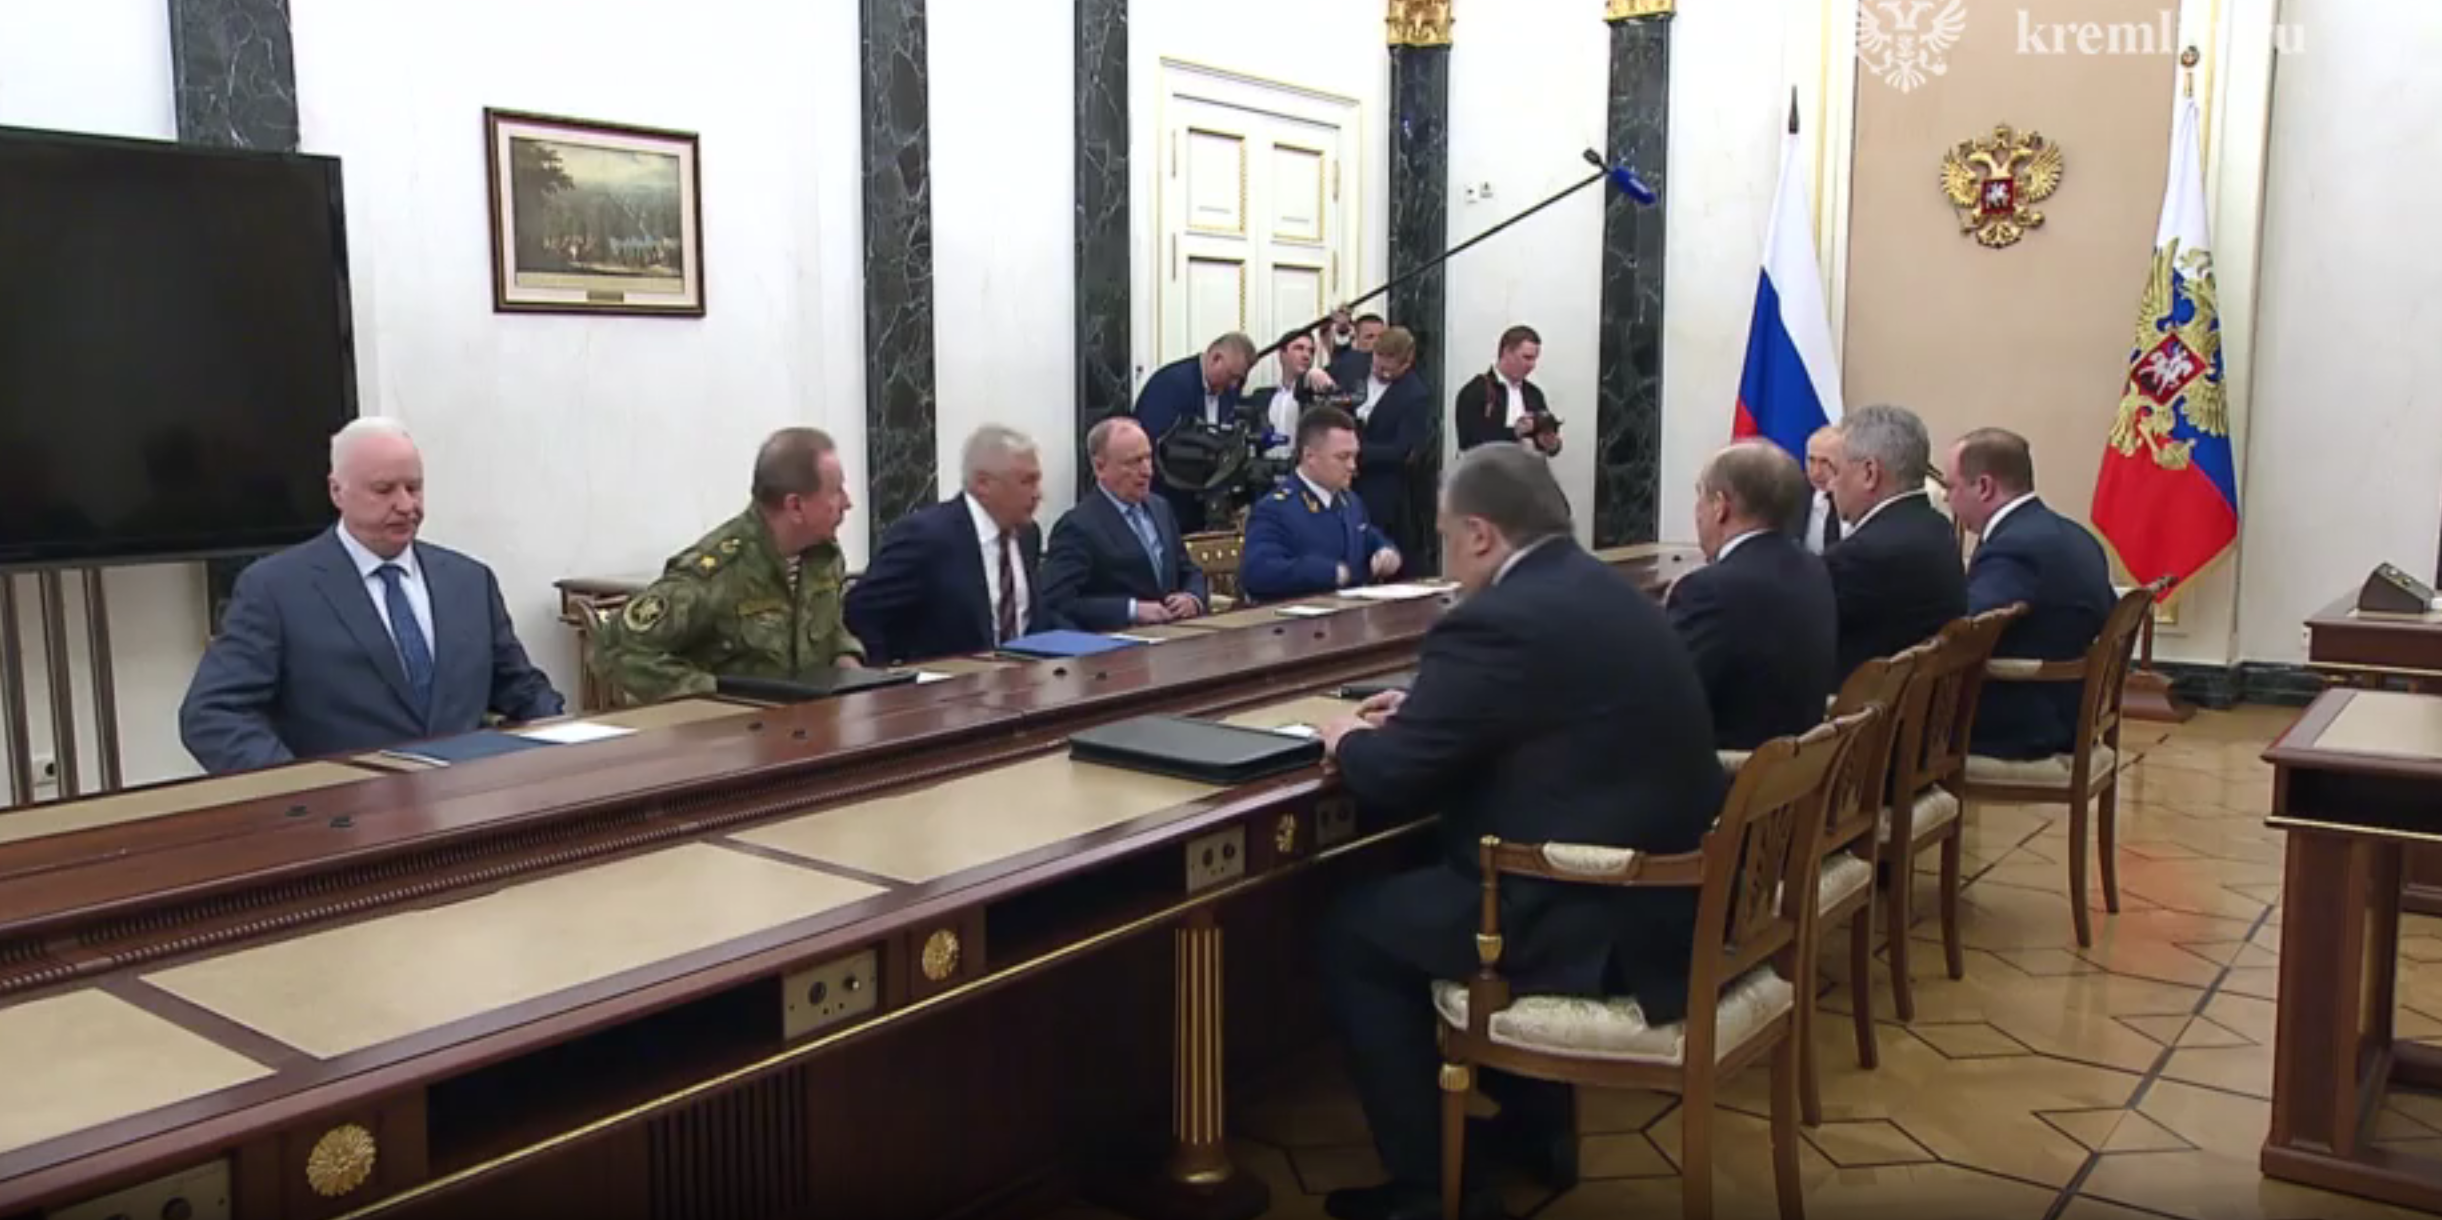 Путин предложил силовикам проанализировать ситуацию в связи с попыткой мятежа
